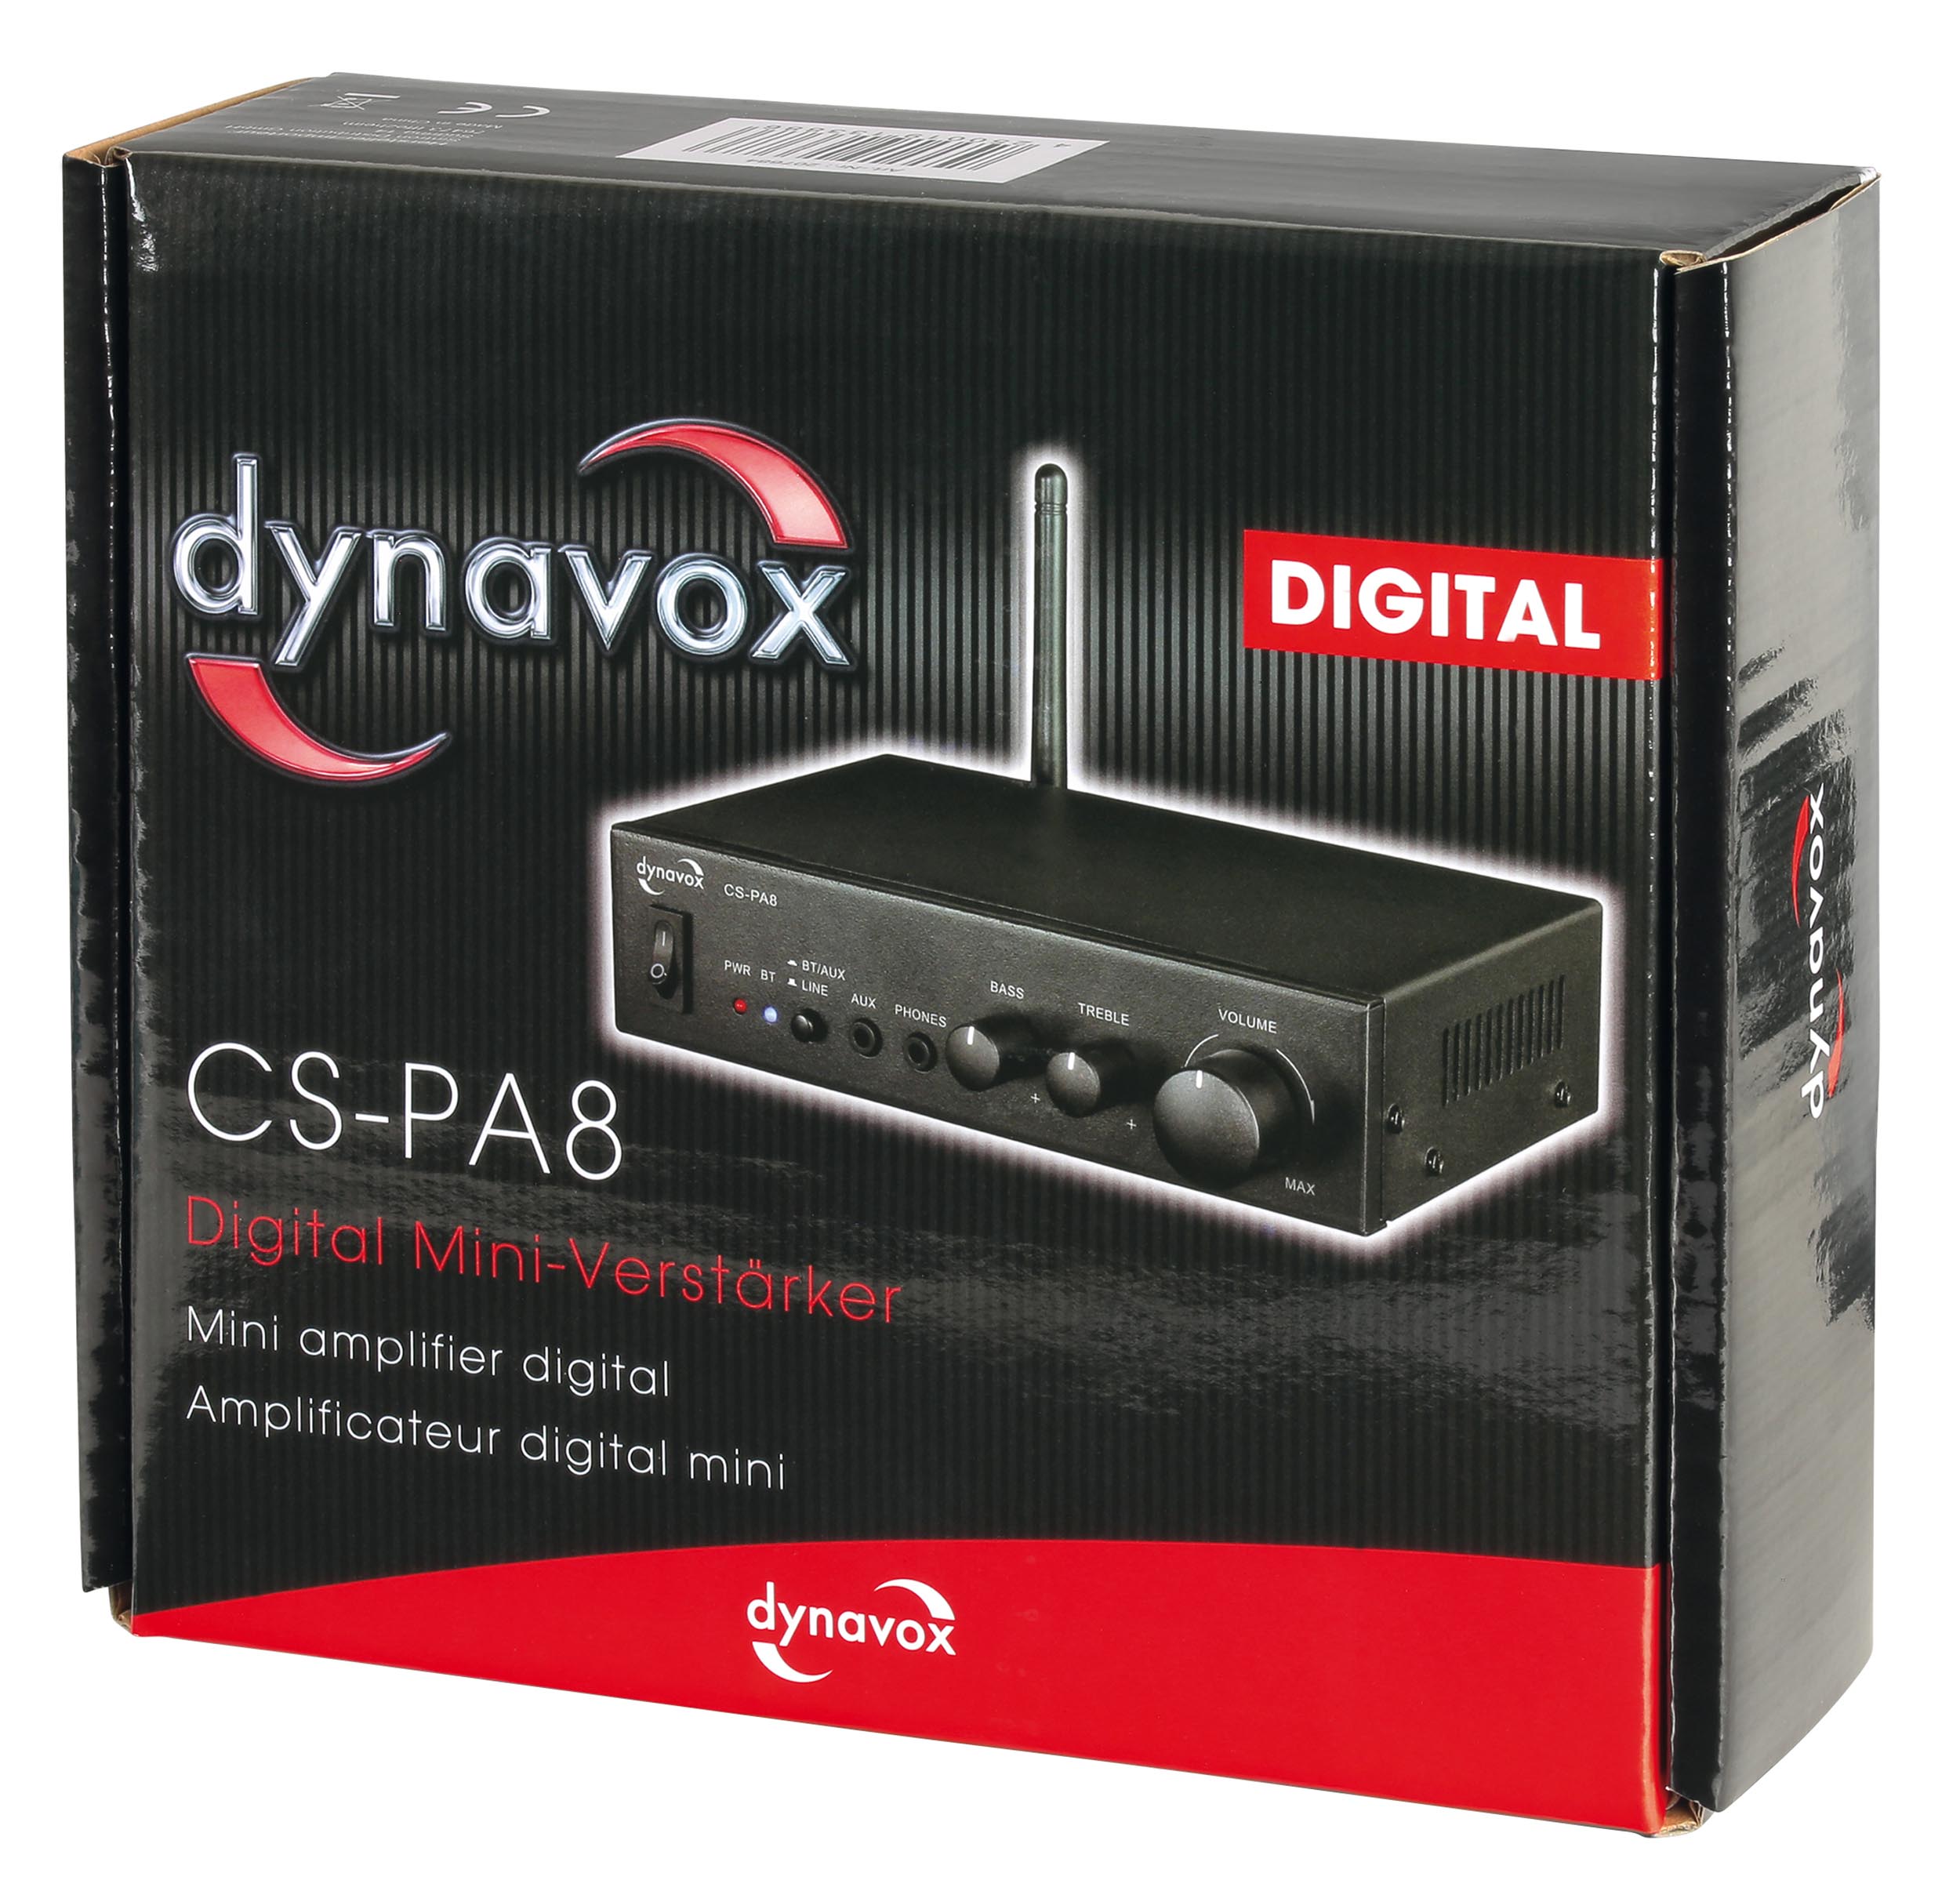 Dynavox digitaler Mini-Verstärker CS-PA8, Packshot.